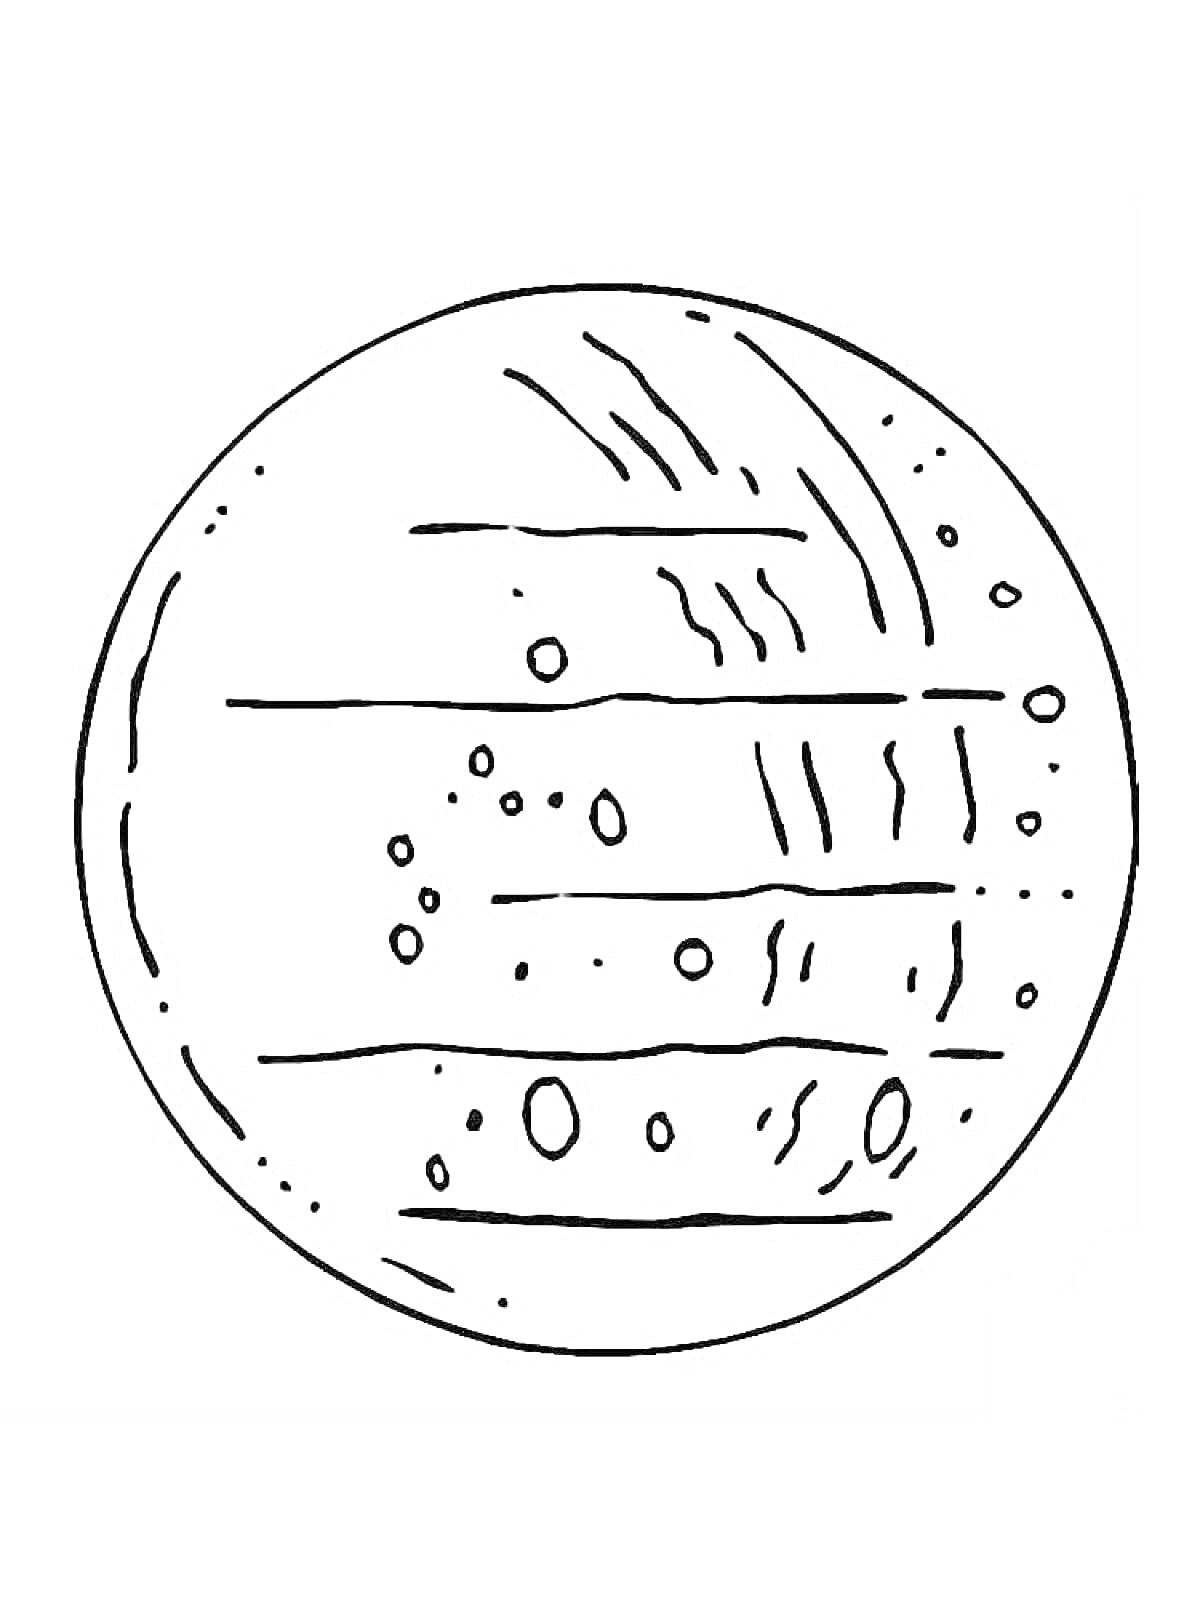 Раскраска Планета с кольцами и кратерами